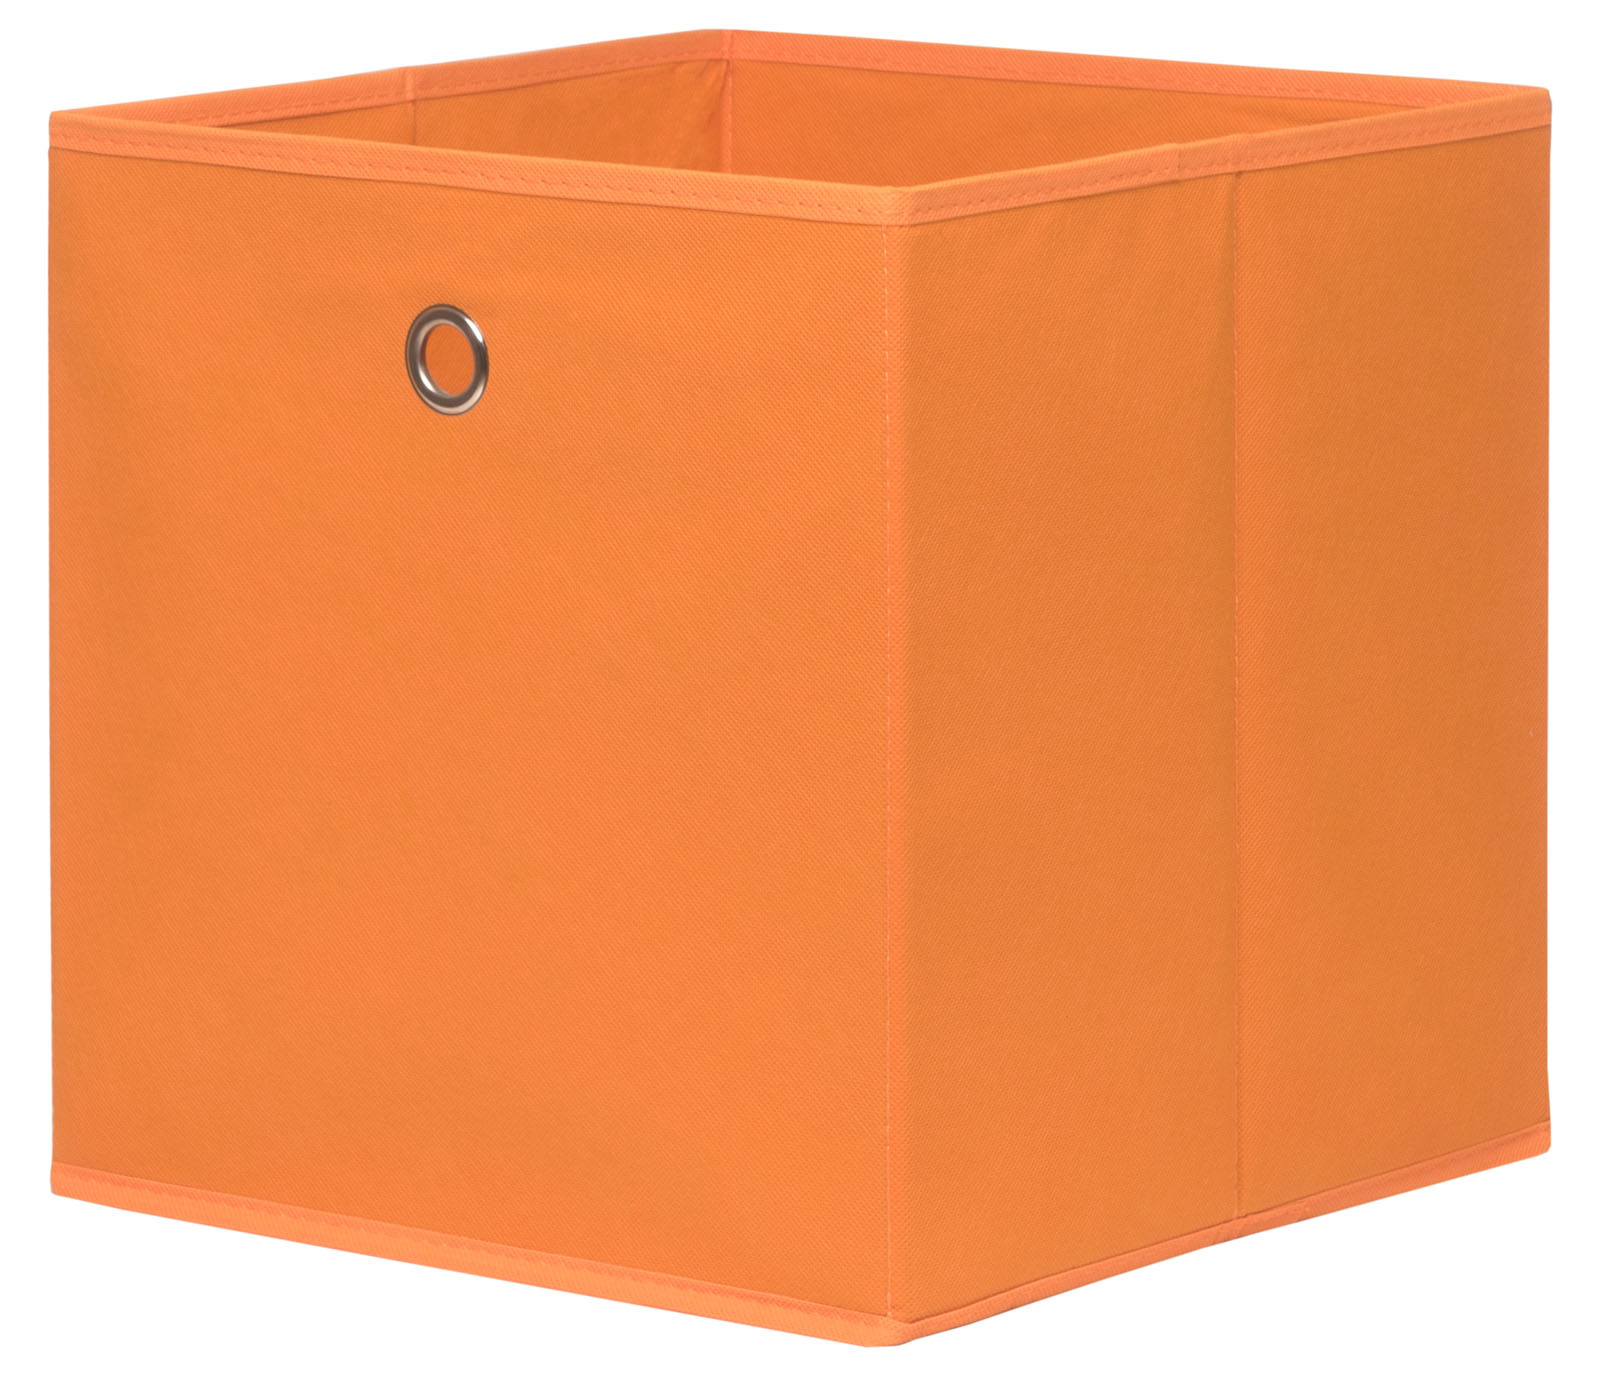 Úložný box oranžový skladem